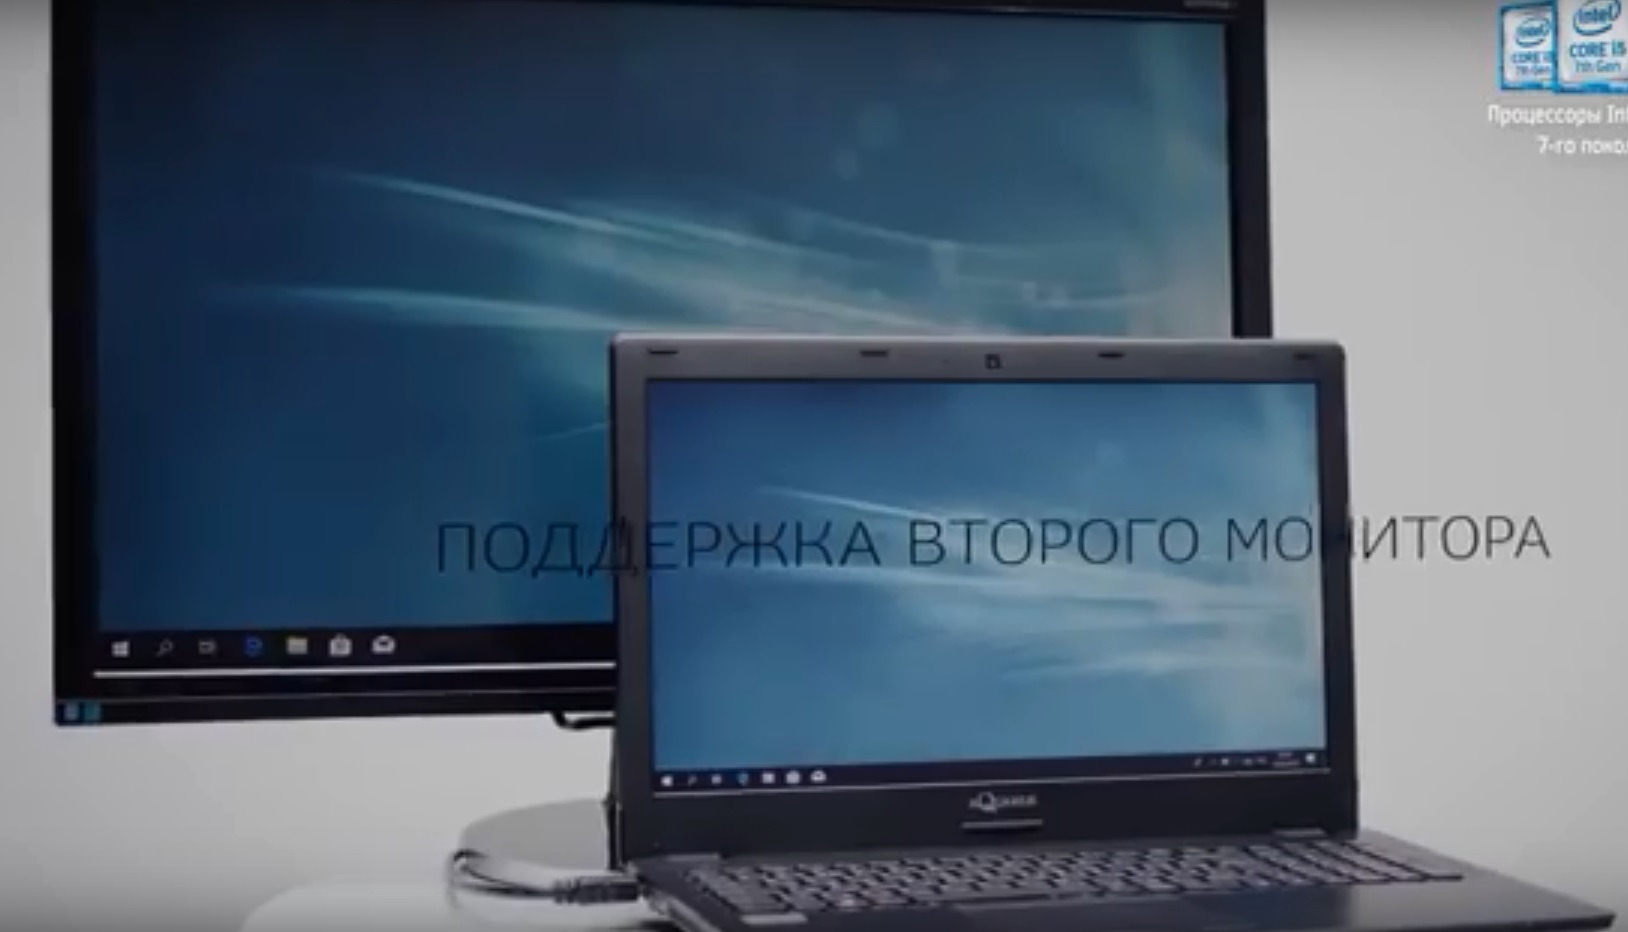 Первые российские ноутбуки делают в Шуе (ВИДЕО)